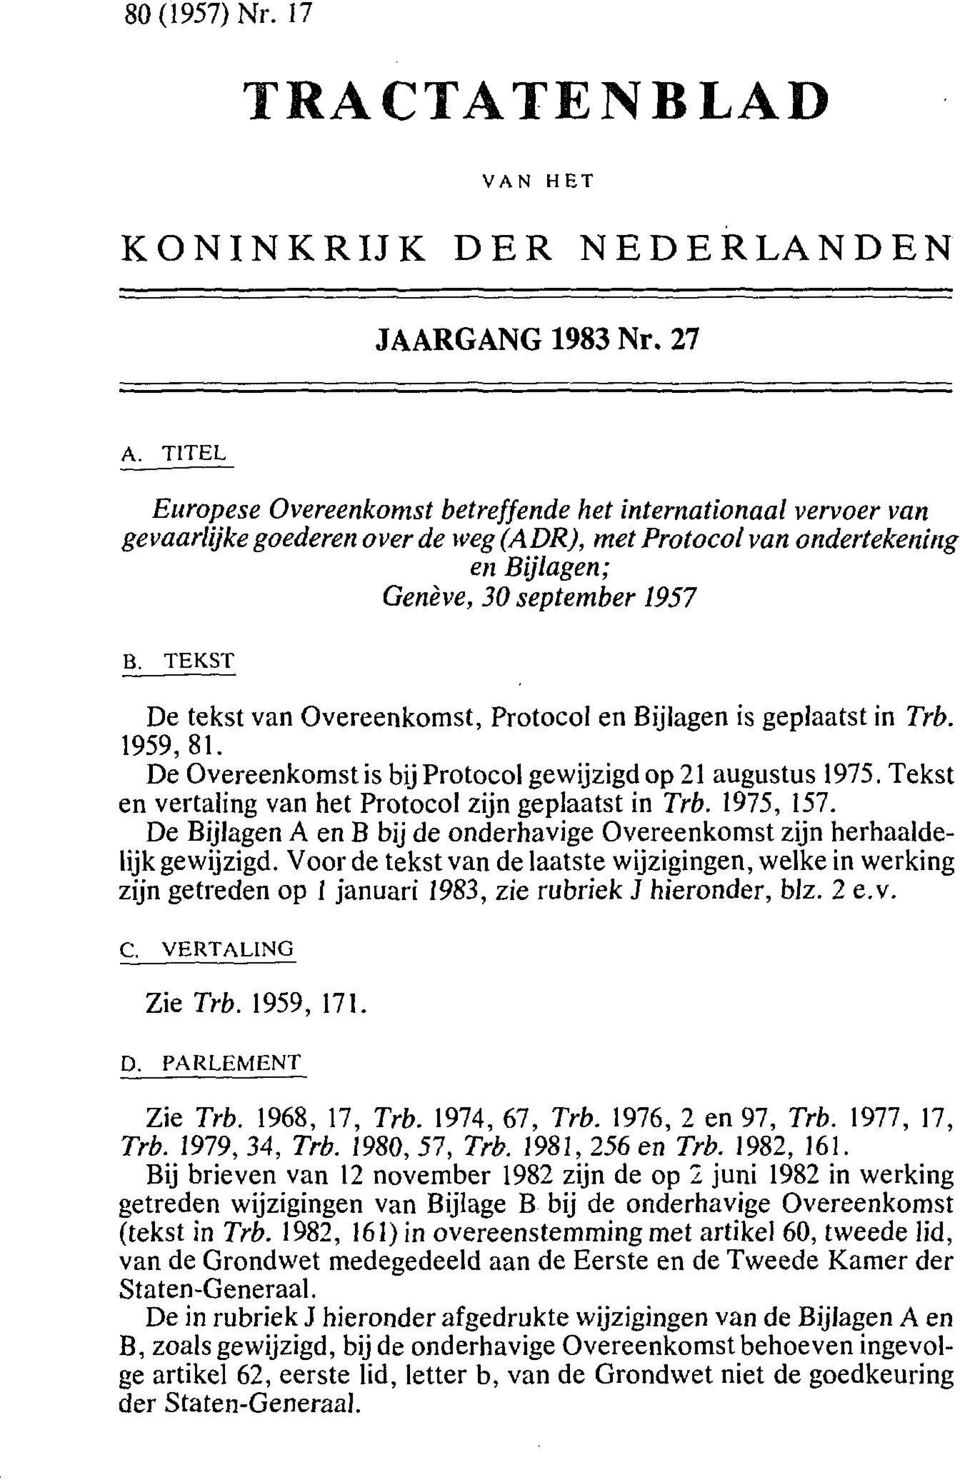 TEKST De tekst van Overeenkomst, Protocol en Bijlagen is geplaatst in Trb. 1959,81. De Overeenkomst is bij Protocol gewijzigd op 21 augustus 1975.